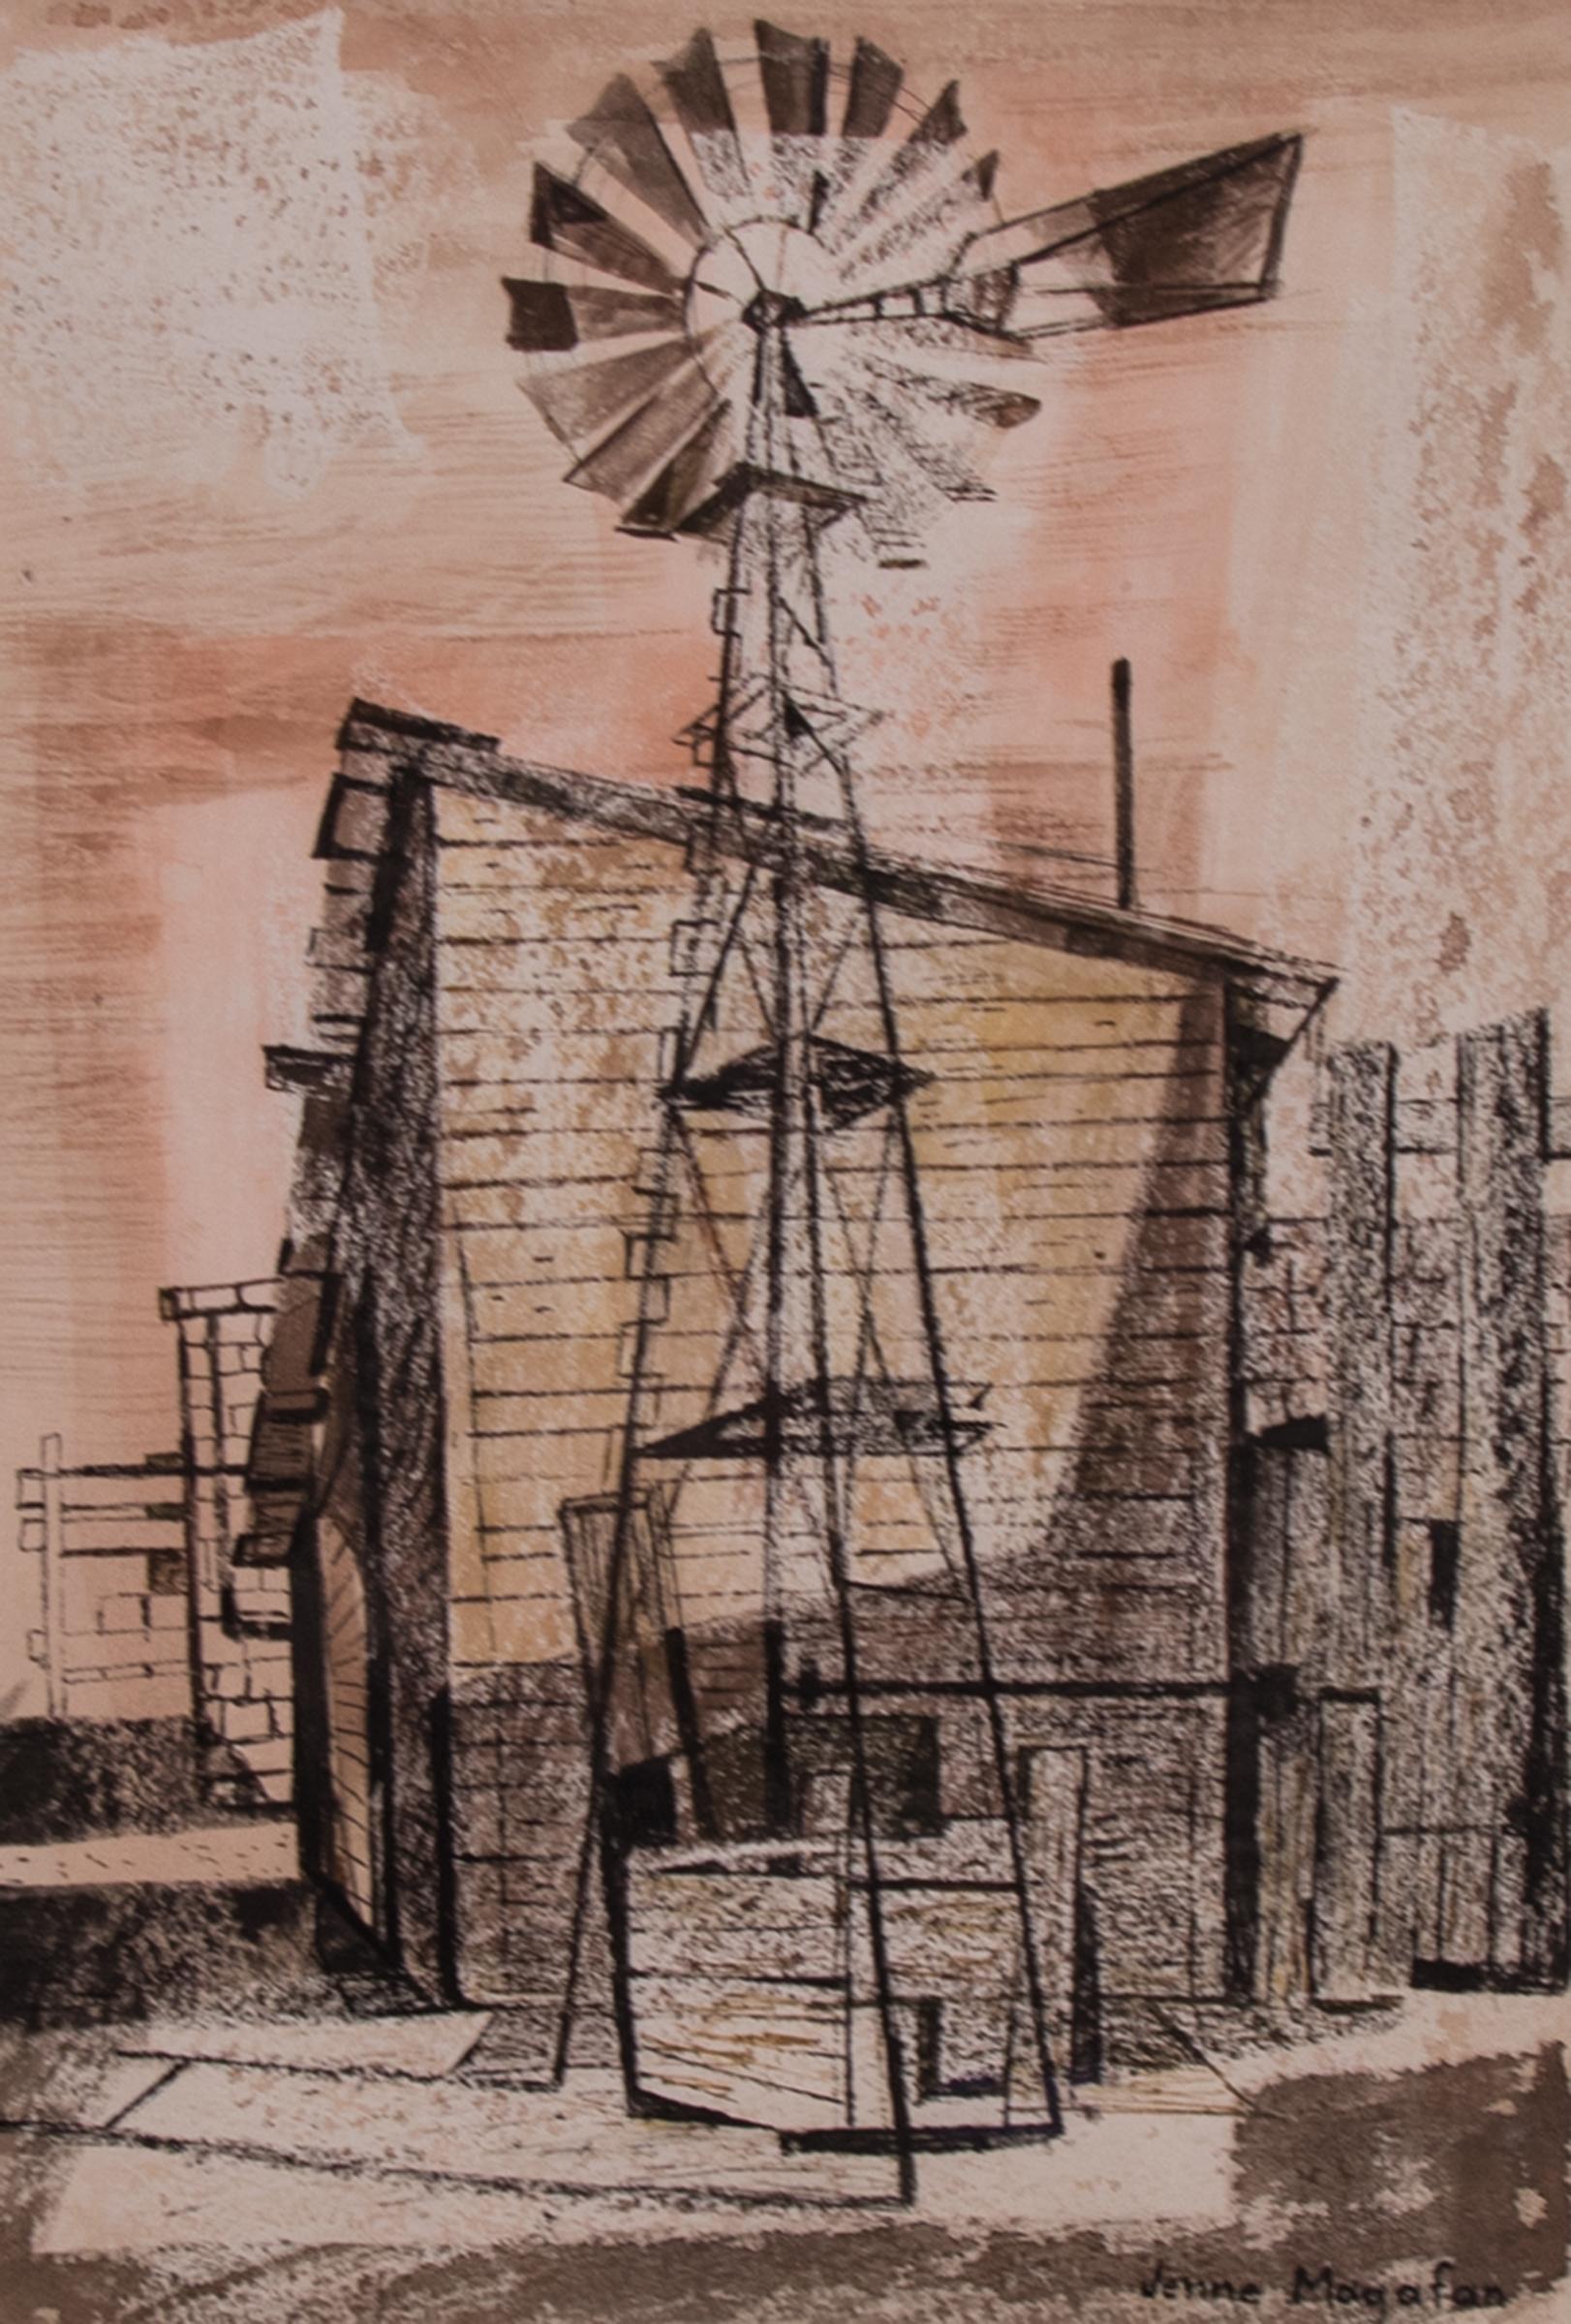 Windmühle auf den Felsen, Modernistisches Gemälde in Mischtechnik, 1940er Jahre, Aquarell und Tusche – Art von Jenne Magafan